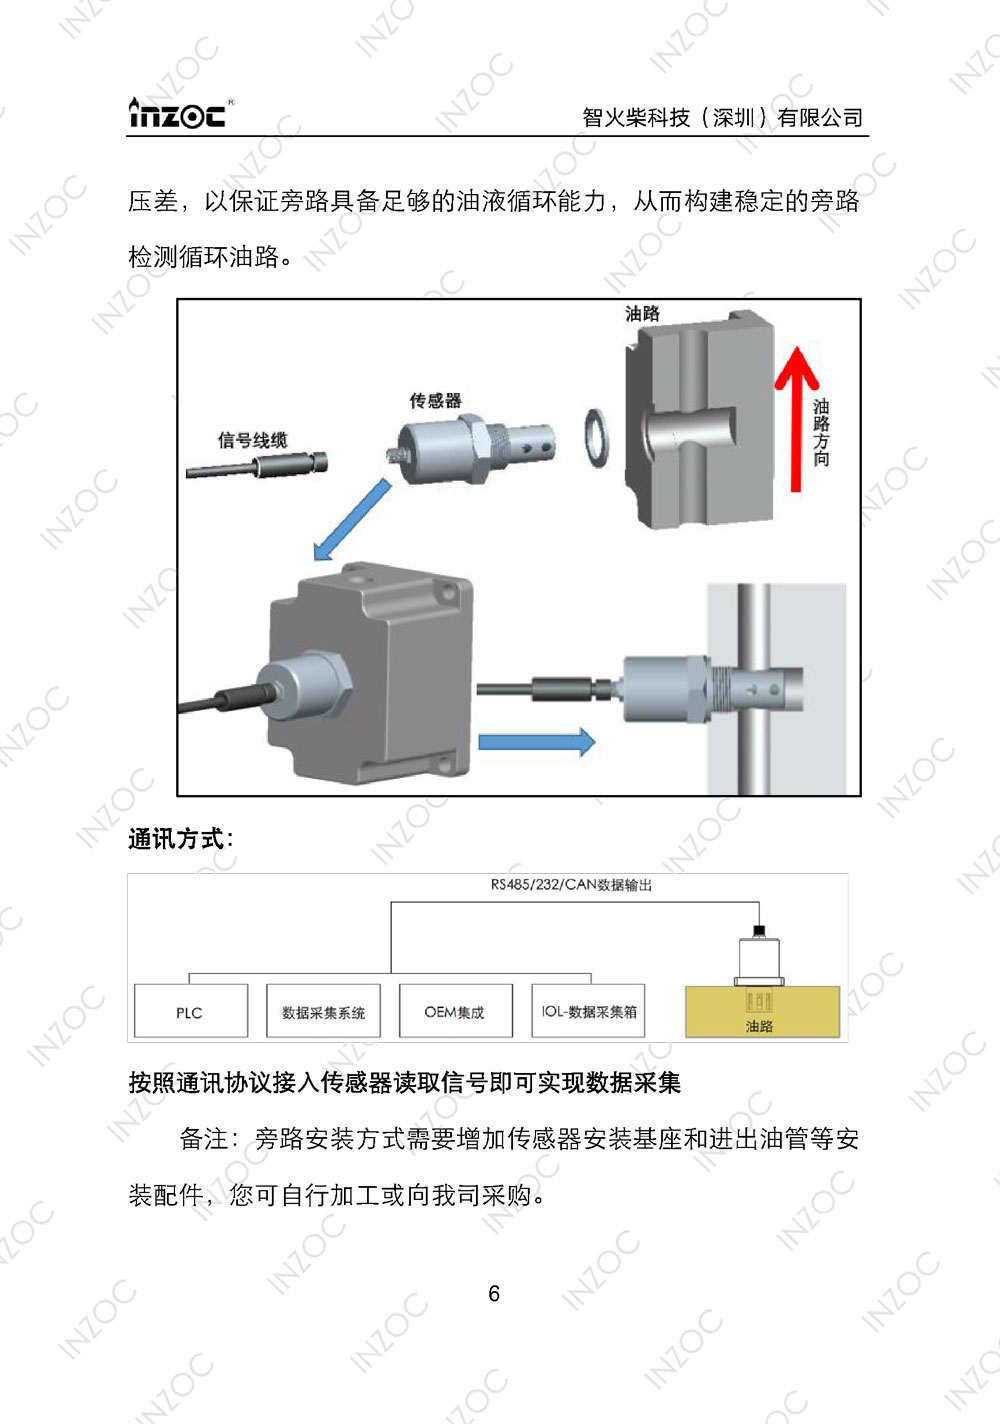 IFW-2A油液微水传感器使用说明书